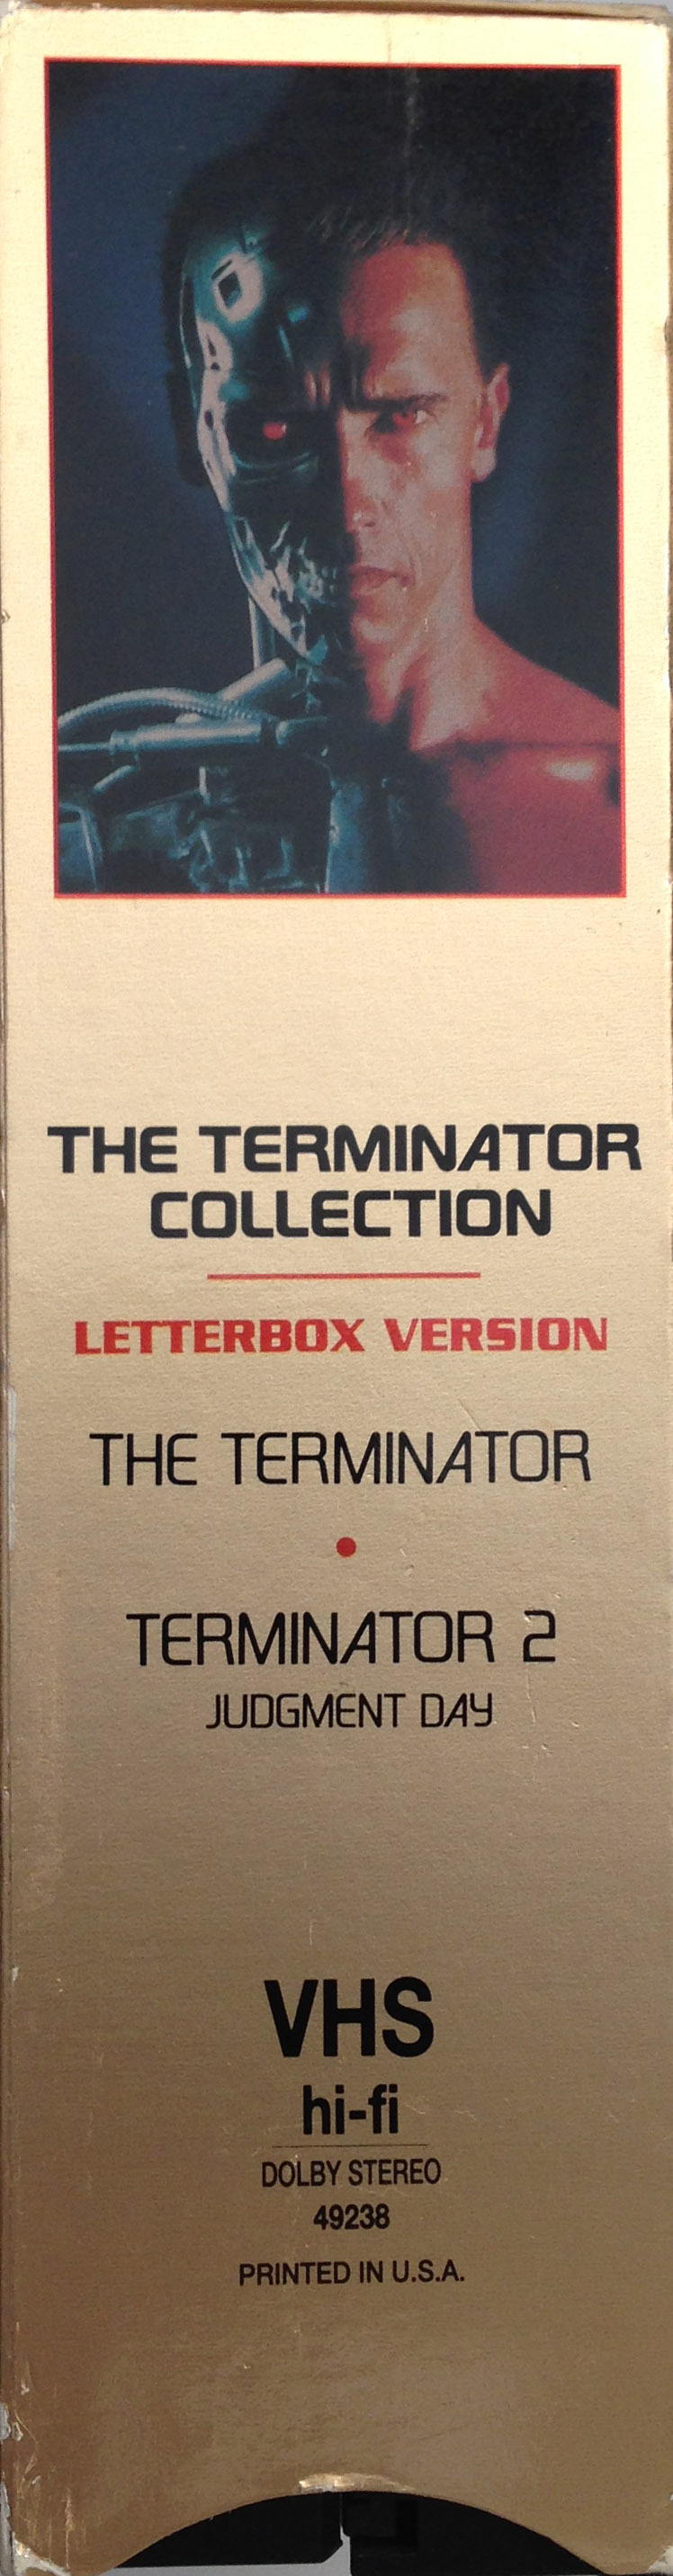 The Terminator Collection: The Terminator / Terminator 2 | VHSCollector.com